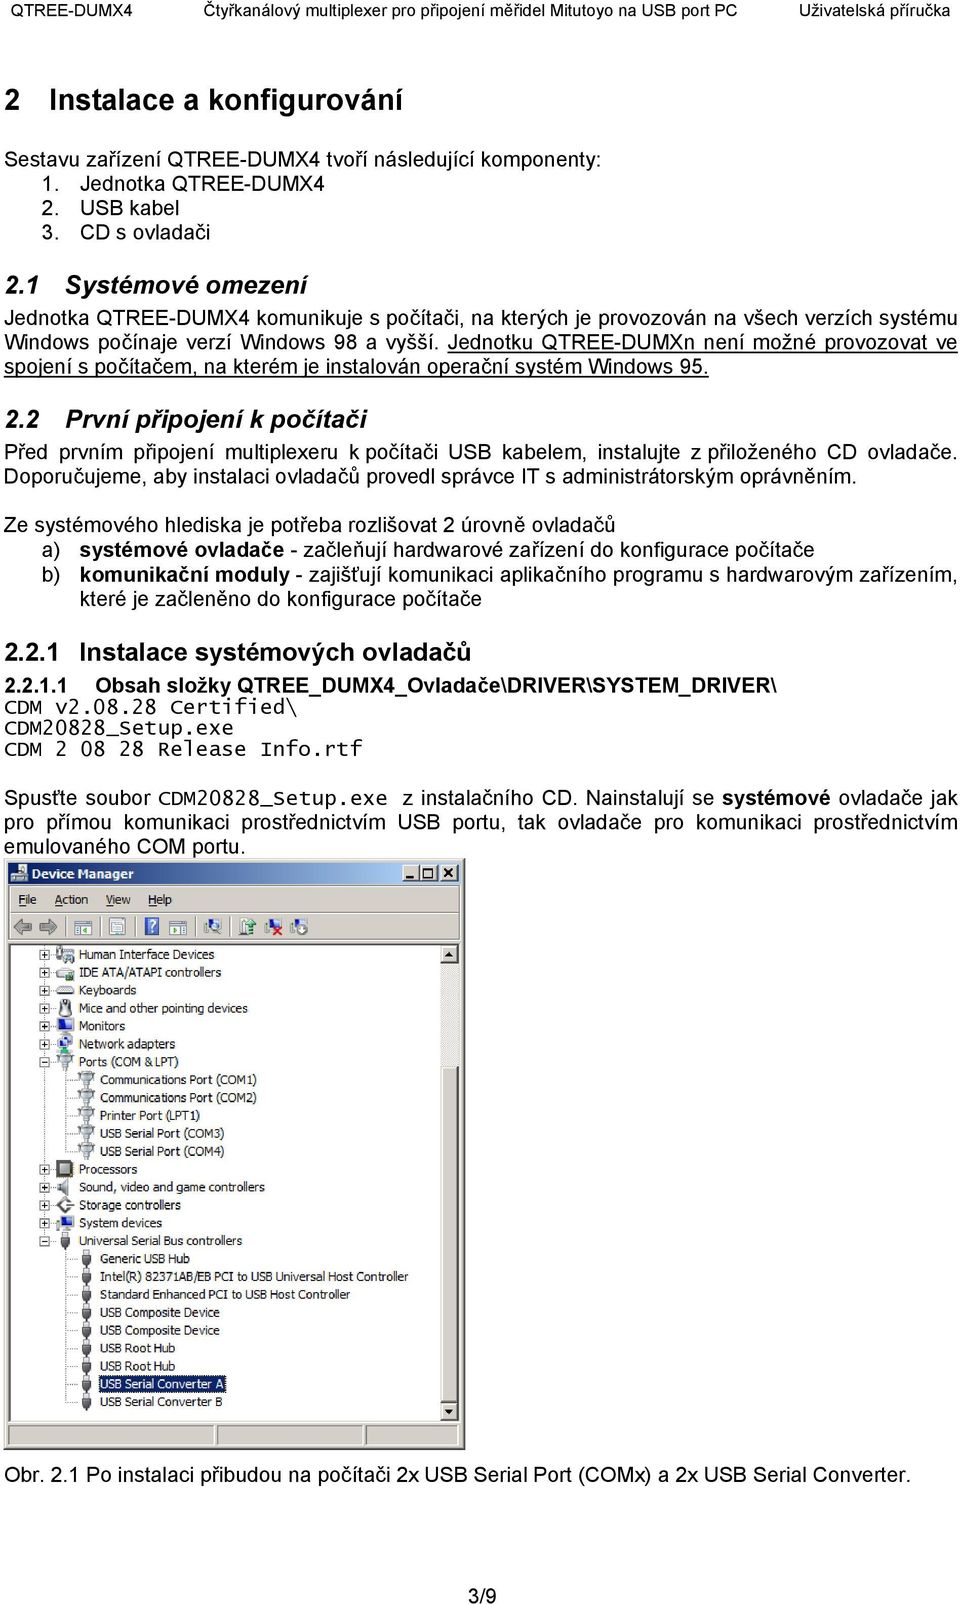 Jednotku QTREE-DUMXn není možné provozovat ve spojení s počítačem, na kterém je instalován operační systém Windows 95. 2.